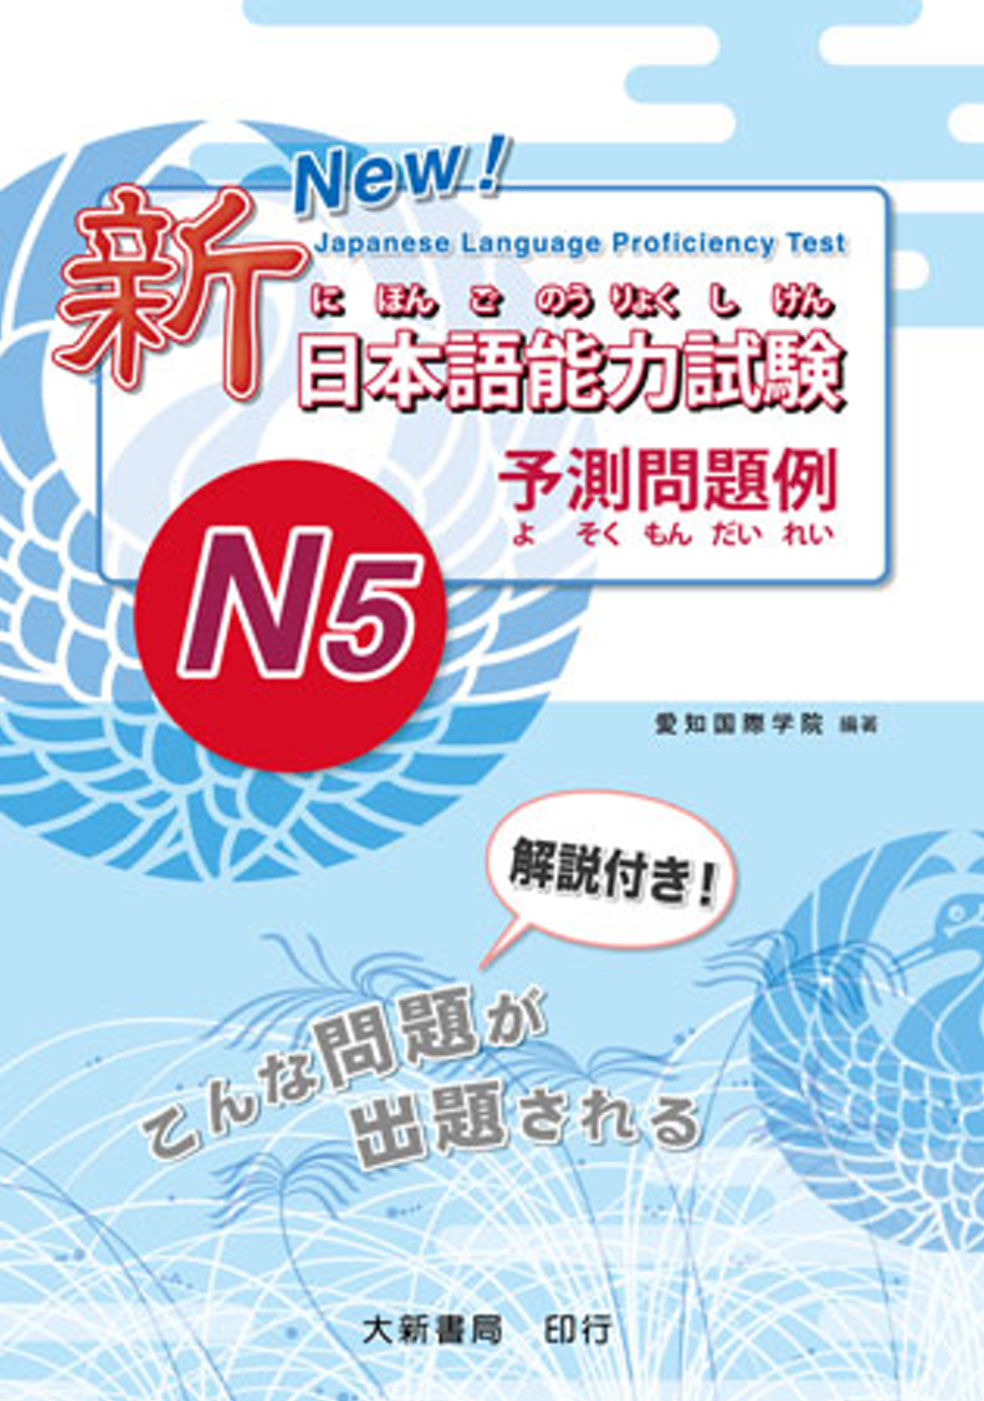 新日本語能力試驗 -N5- 予測問題例